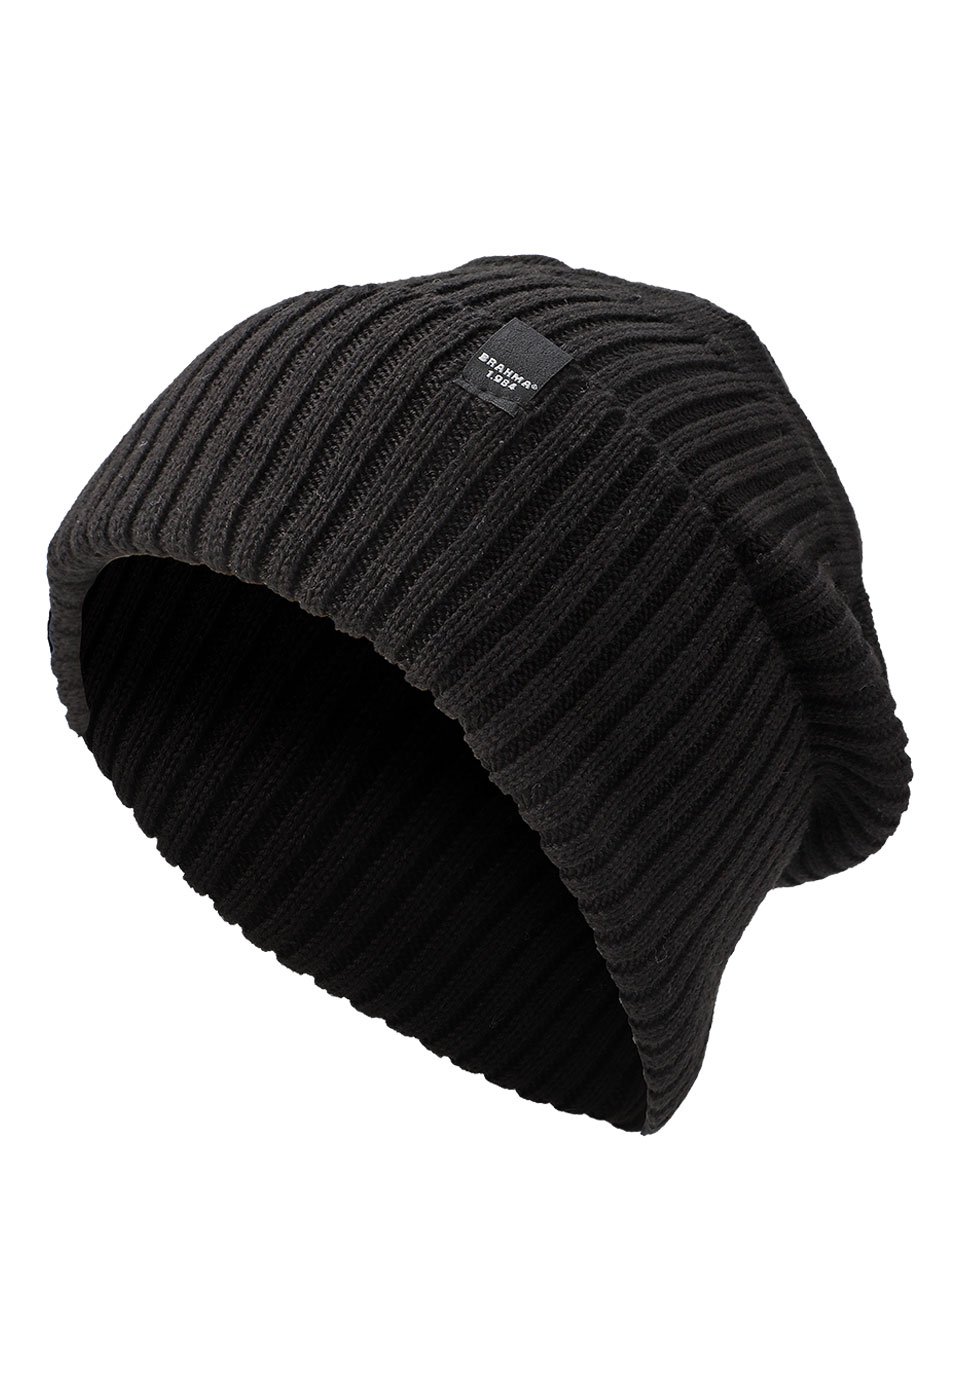 GOR0031 - Hats